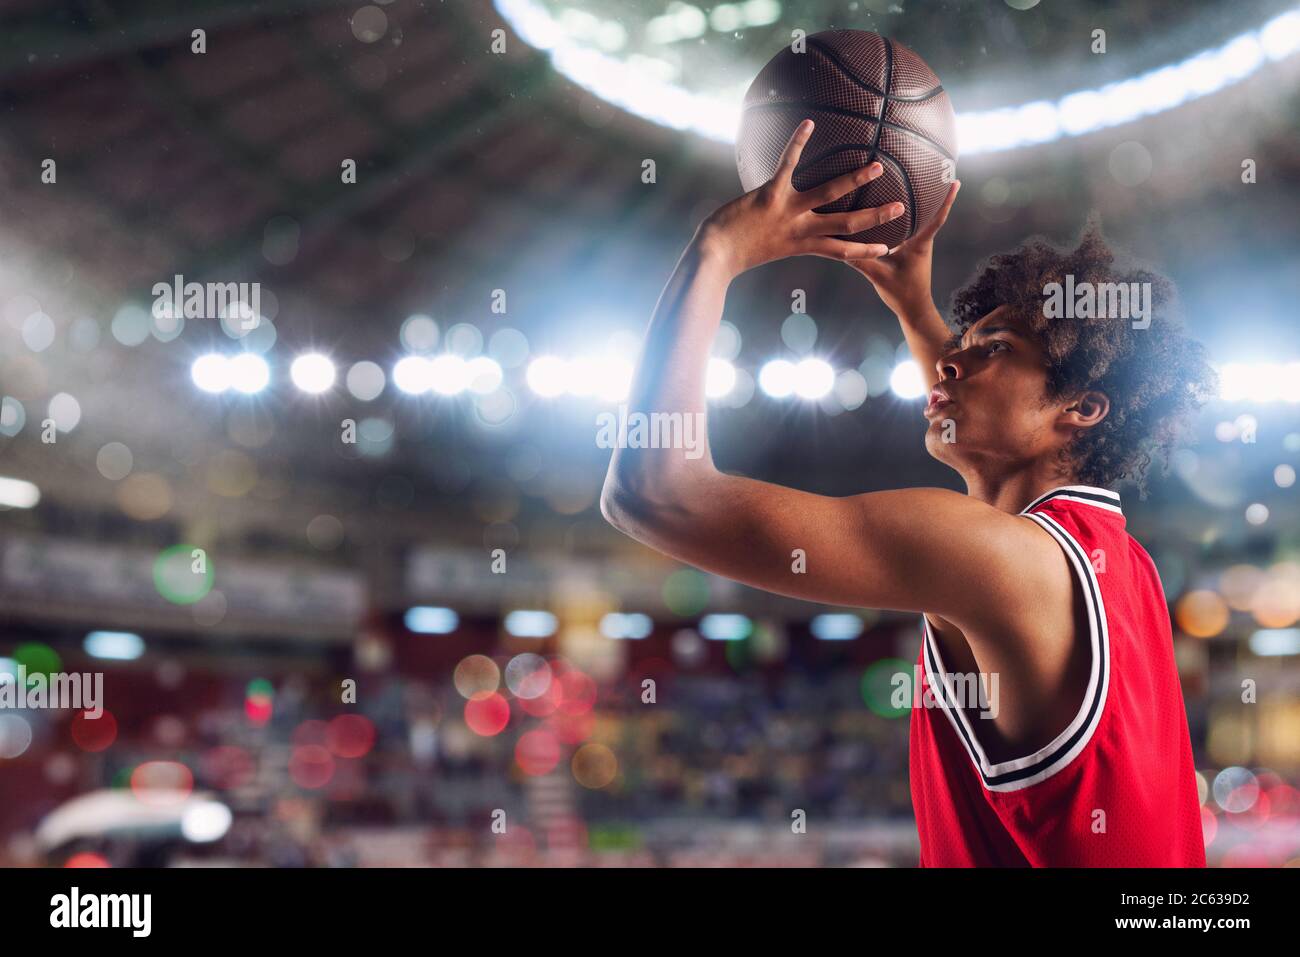 Un joueur de basket-ball jette le ballon dans le panier du stade plein de spectateurs. Banque D'Images